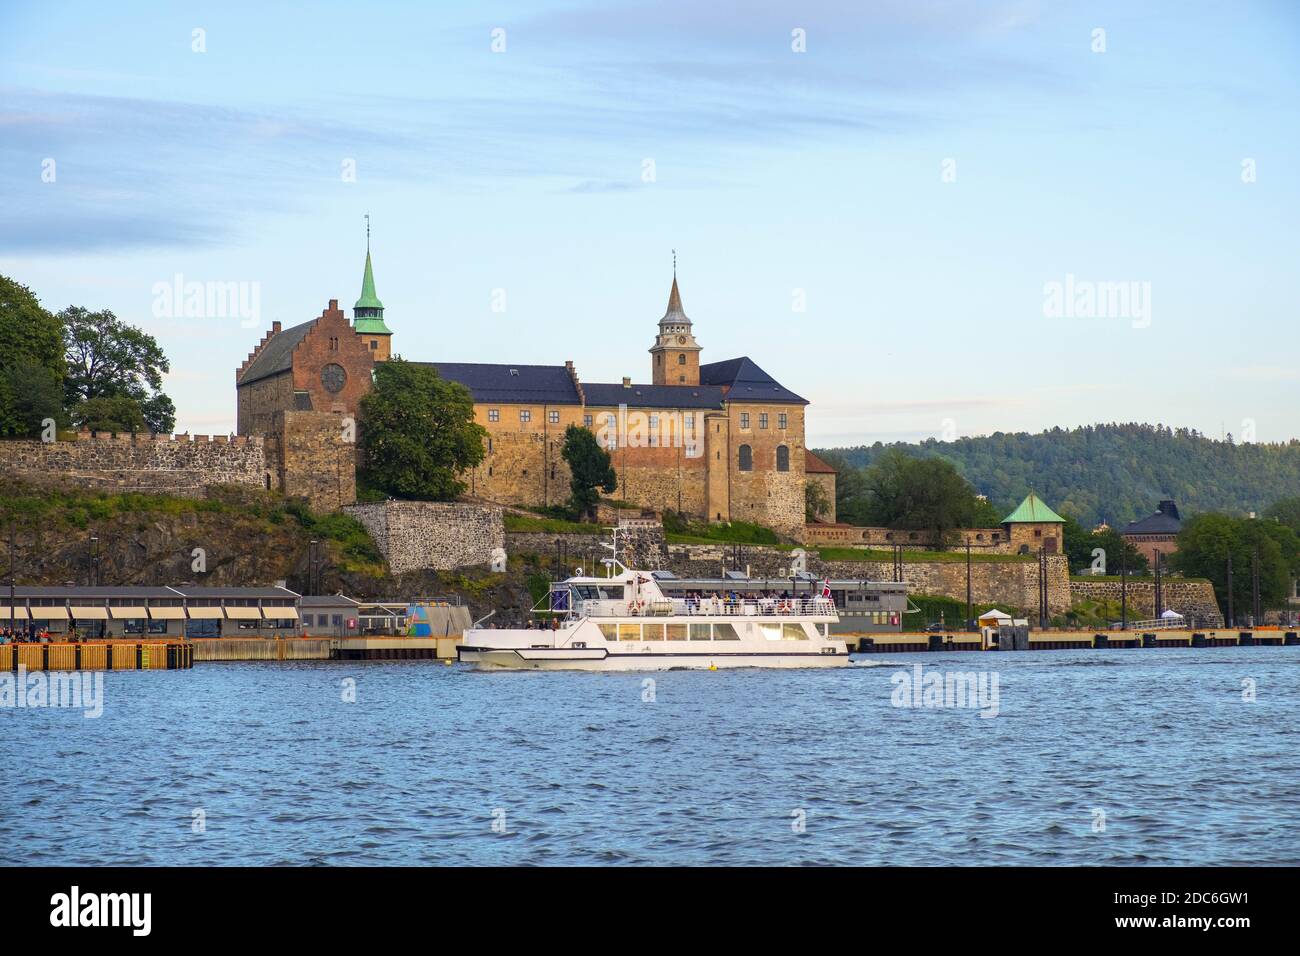 Oslo, Ostlandet / Norwegen - 2019/08/31: Panoramablick auf die mittelalterliche Akershus Festung - Akershus Festning - historische königliche Residenz am Oslofjorden Meer Stockfoto